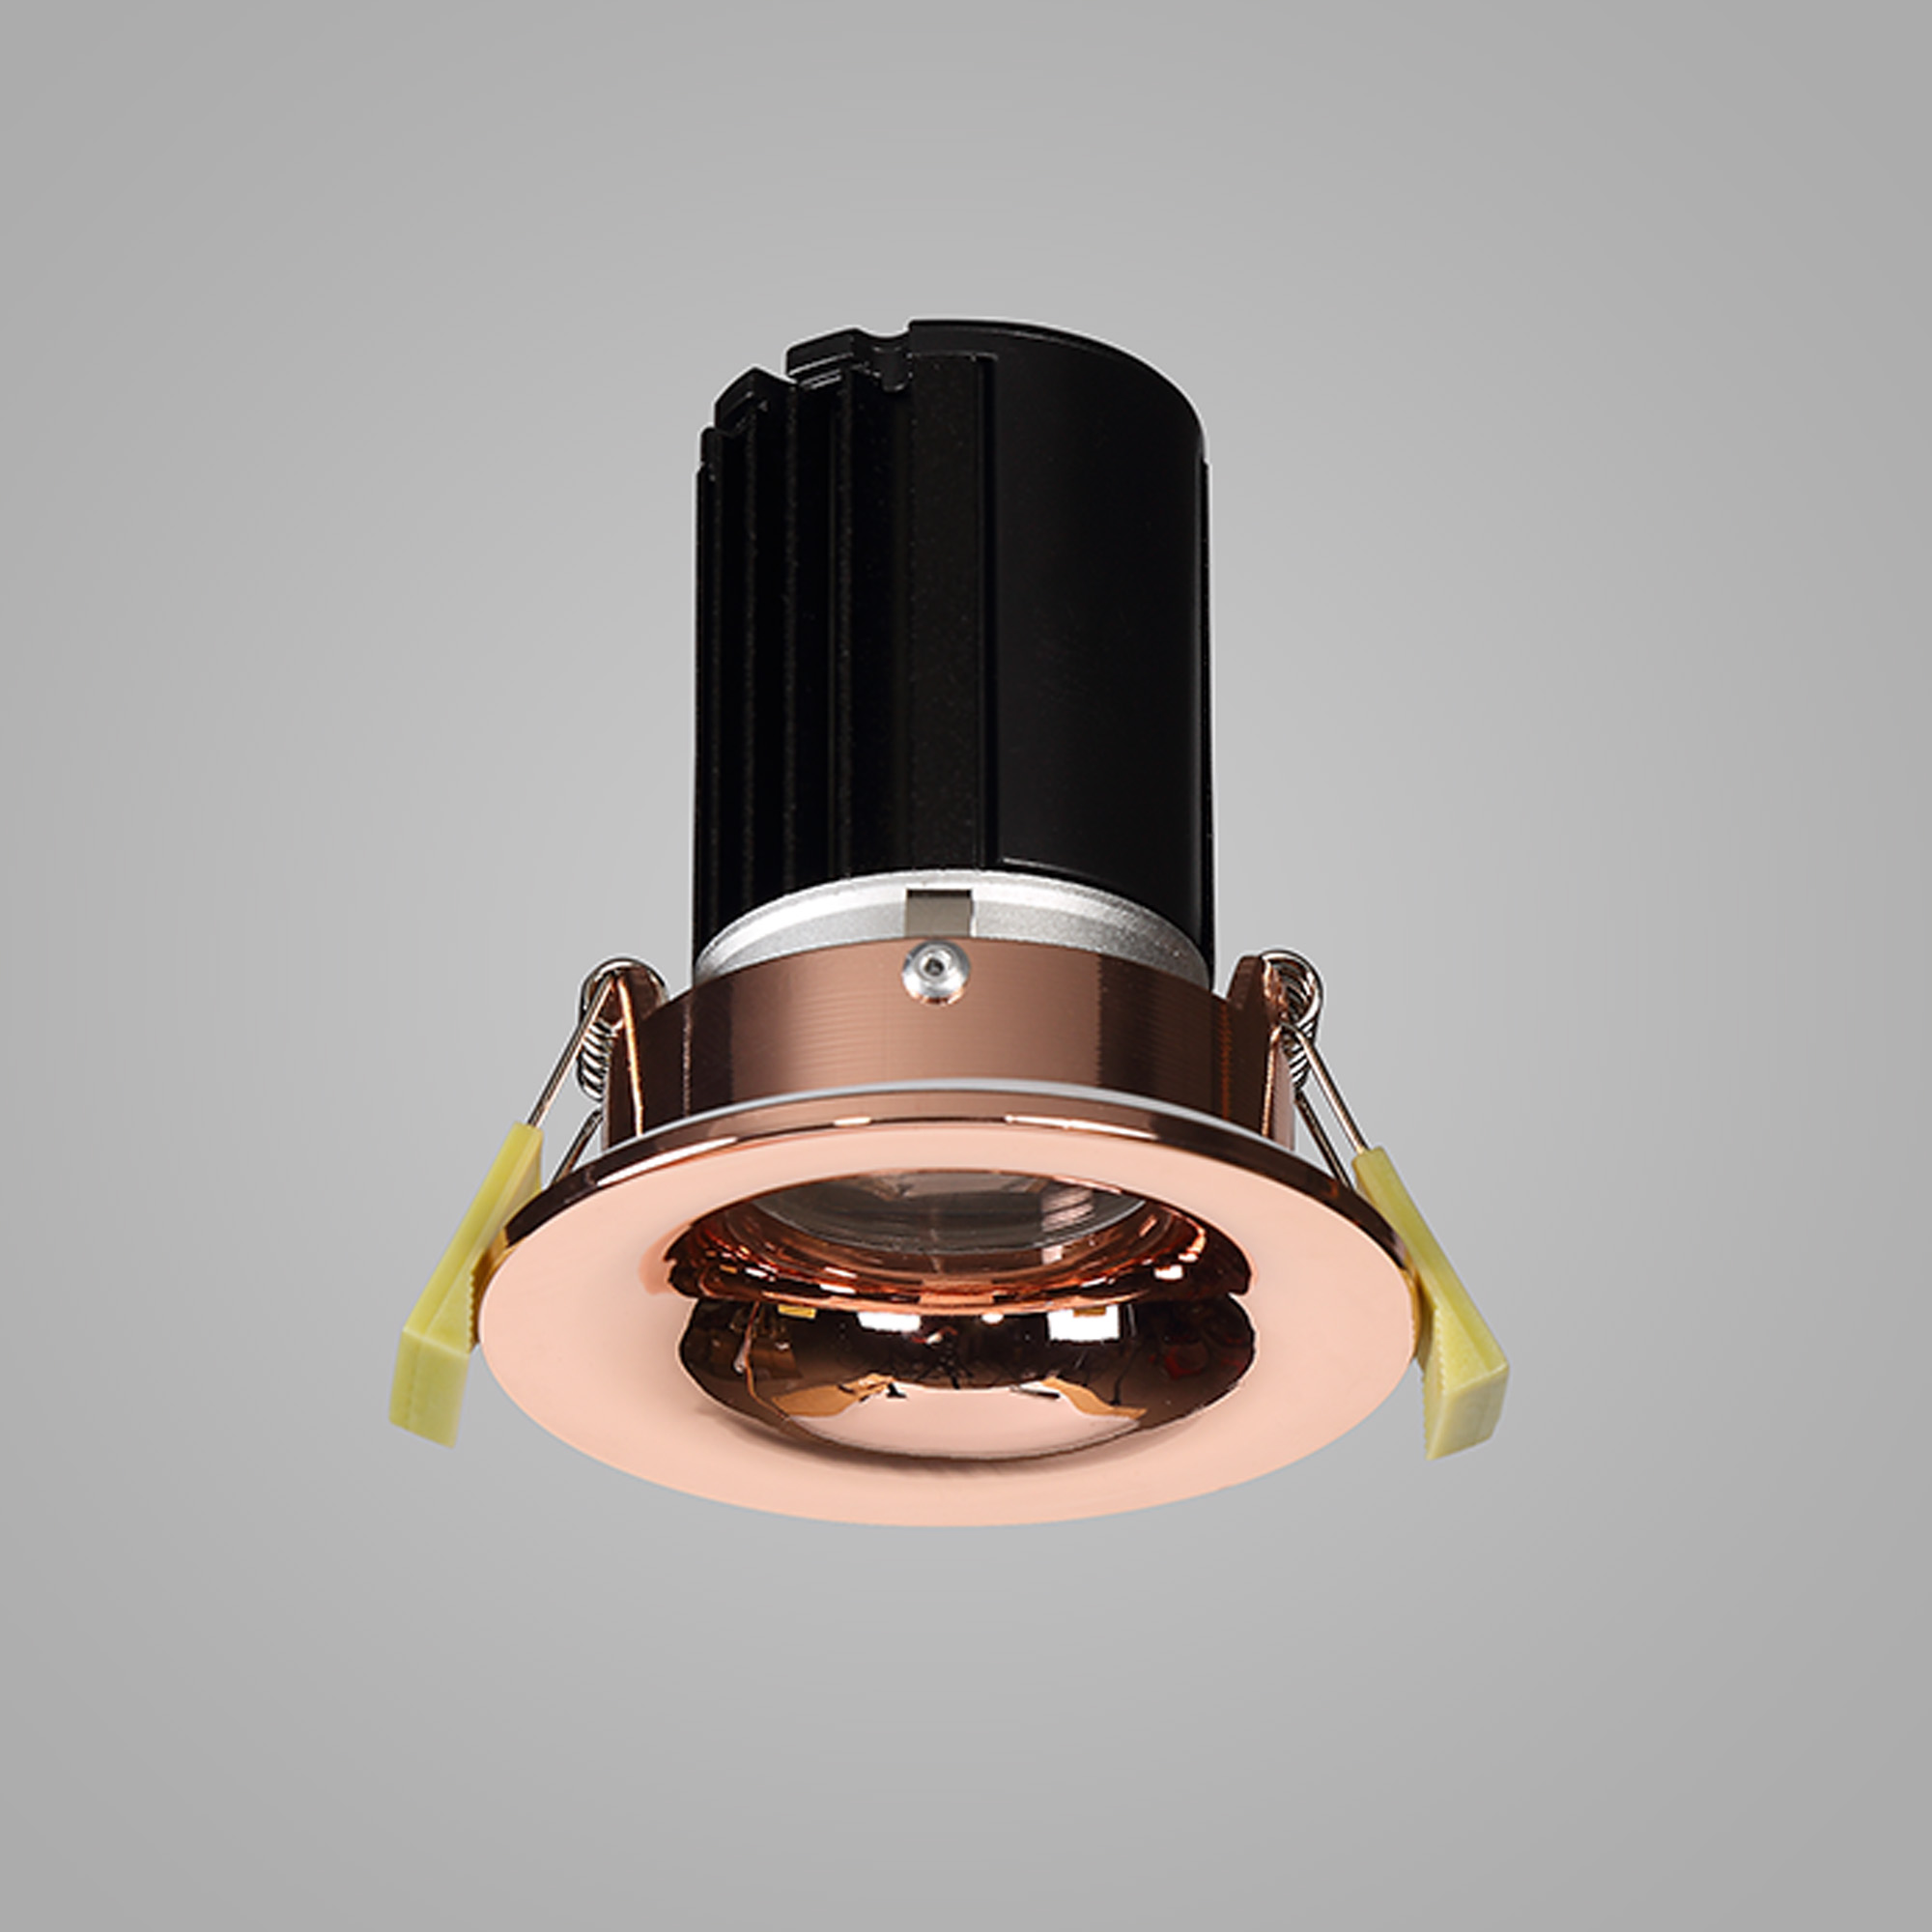 Bruve 9 IP65 Recessed Ceiling Luminaires Dlux Round Recess Ceiling